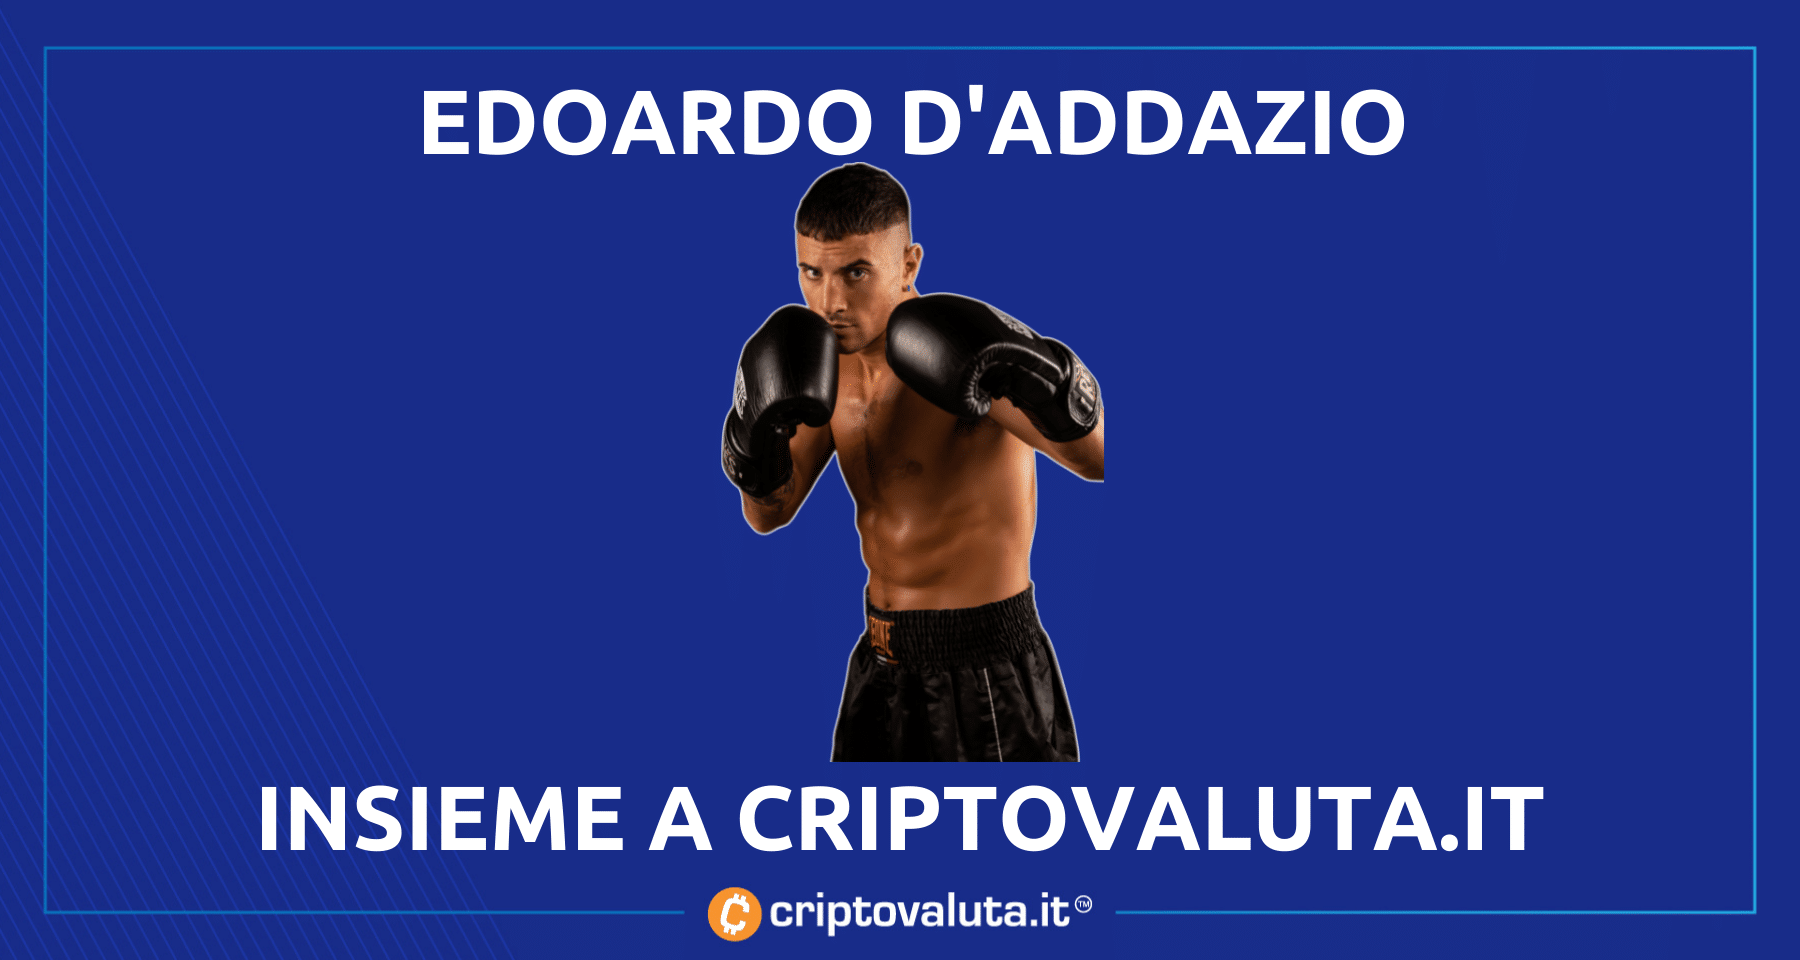 Edoardo D’addazio primo pugile Bitcoin! | Criptovaluta.it ufficializza la partnership